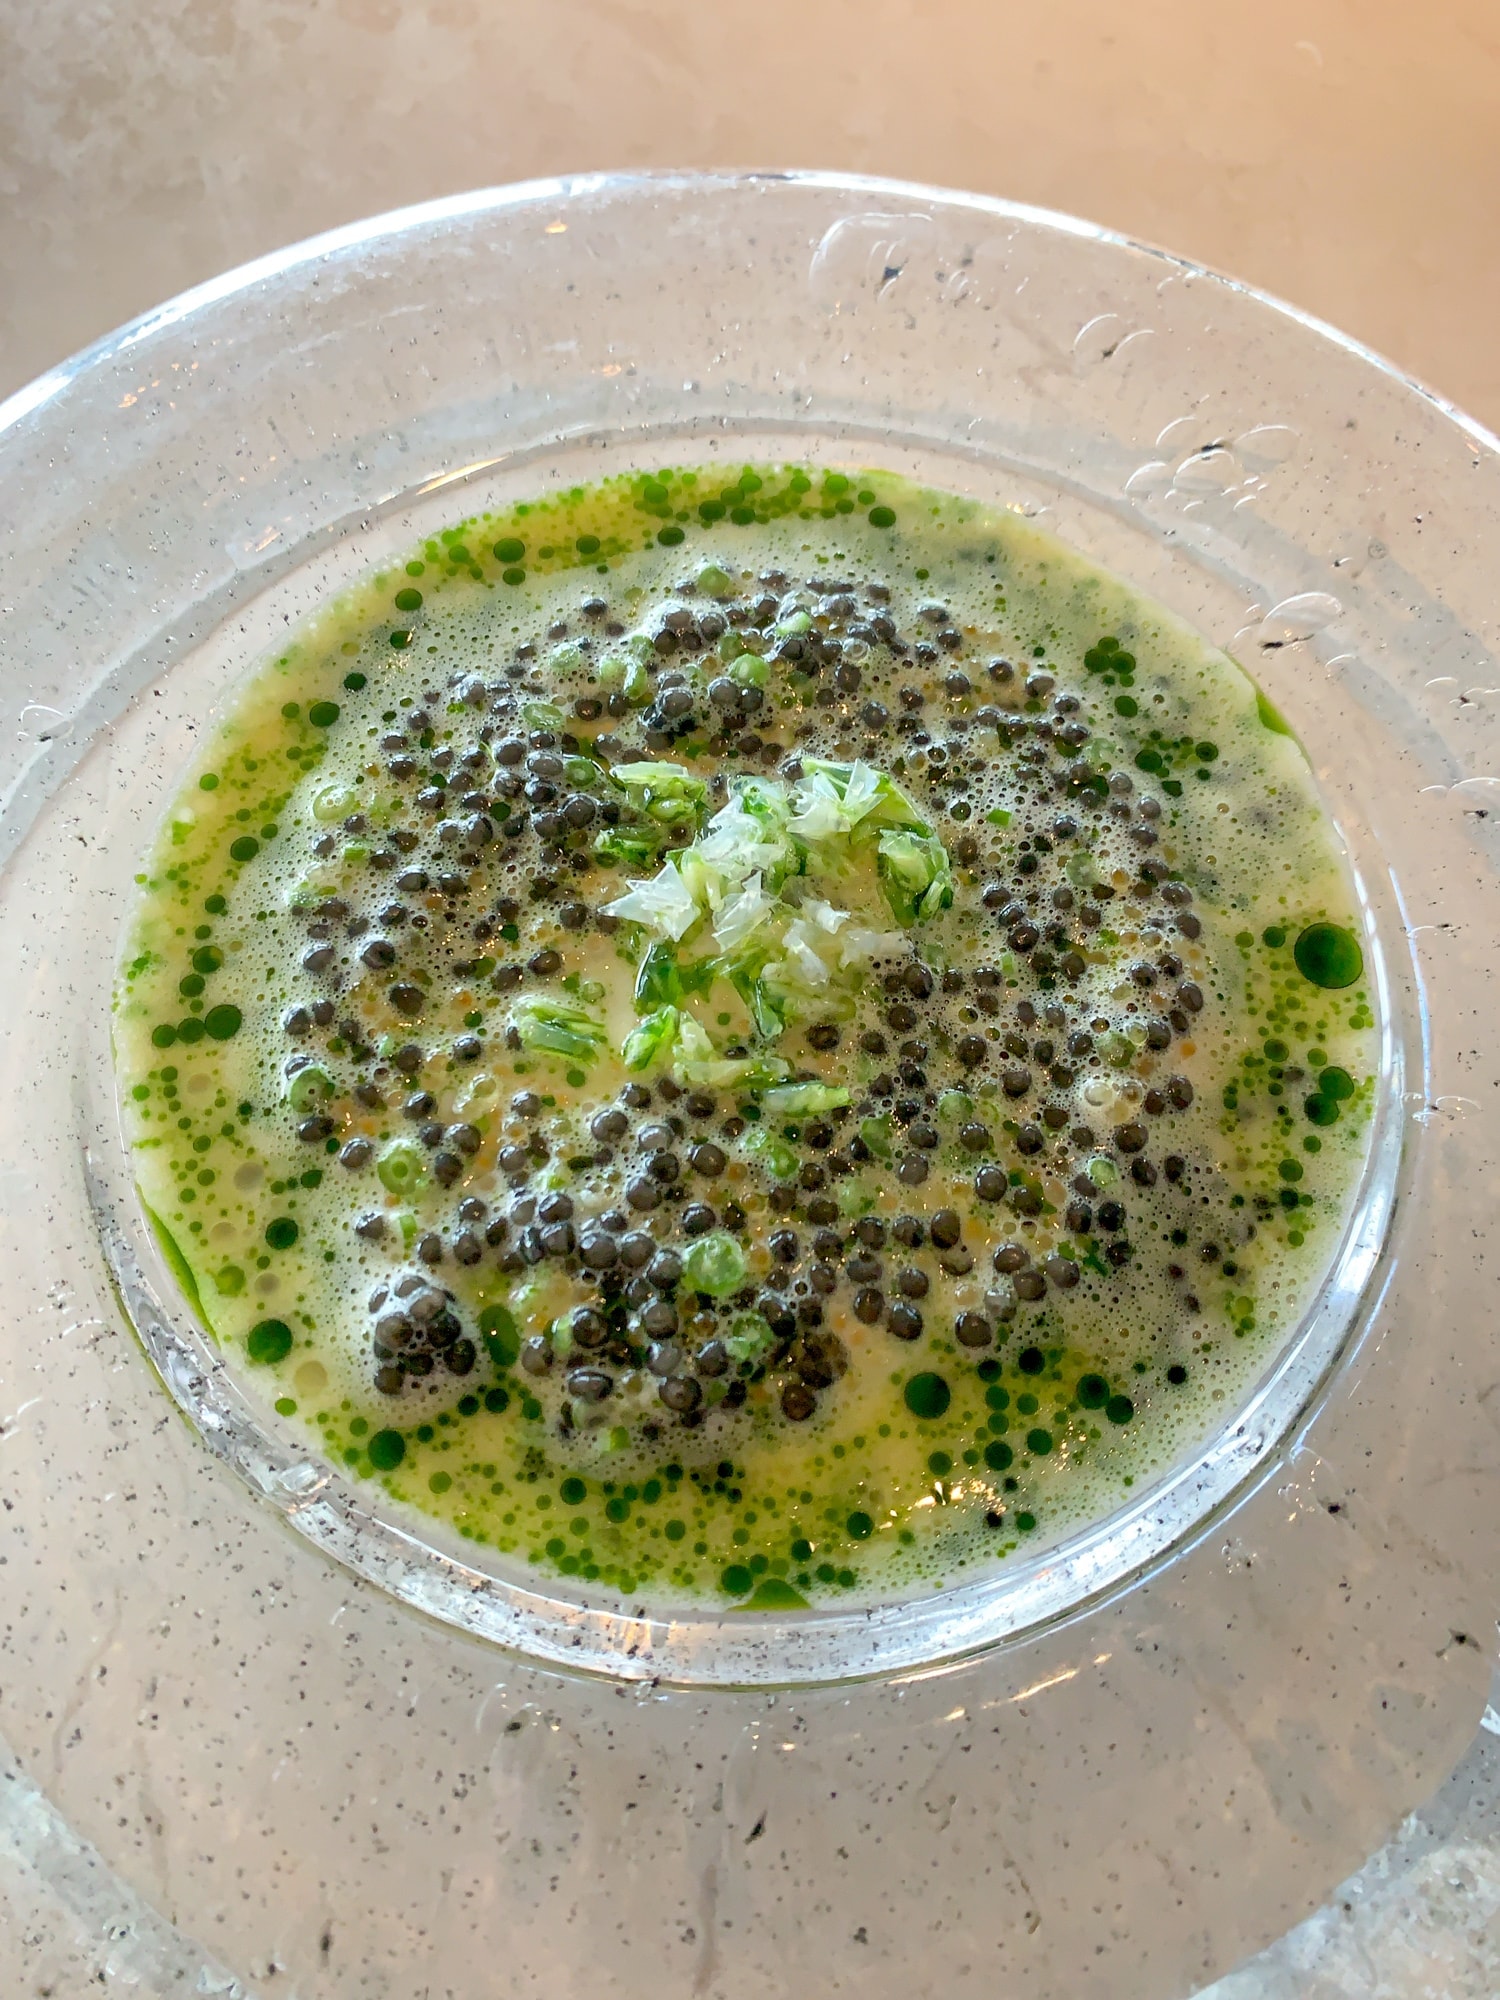 Hake, caviar, and buttermilk at Geranium